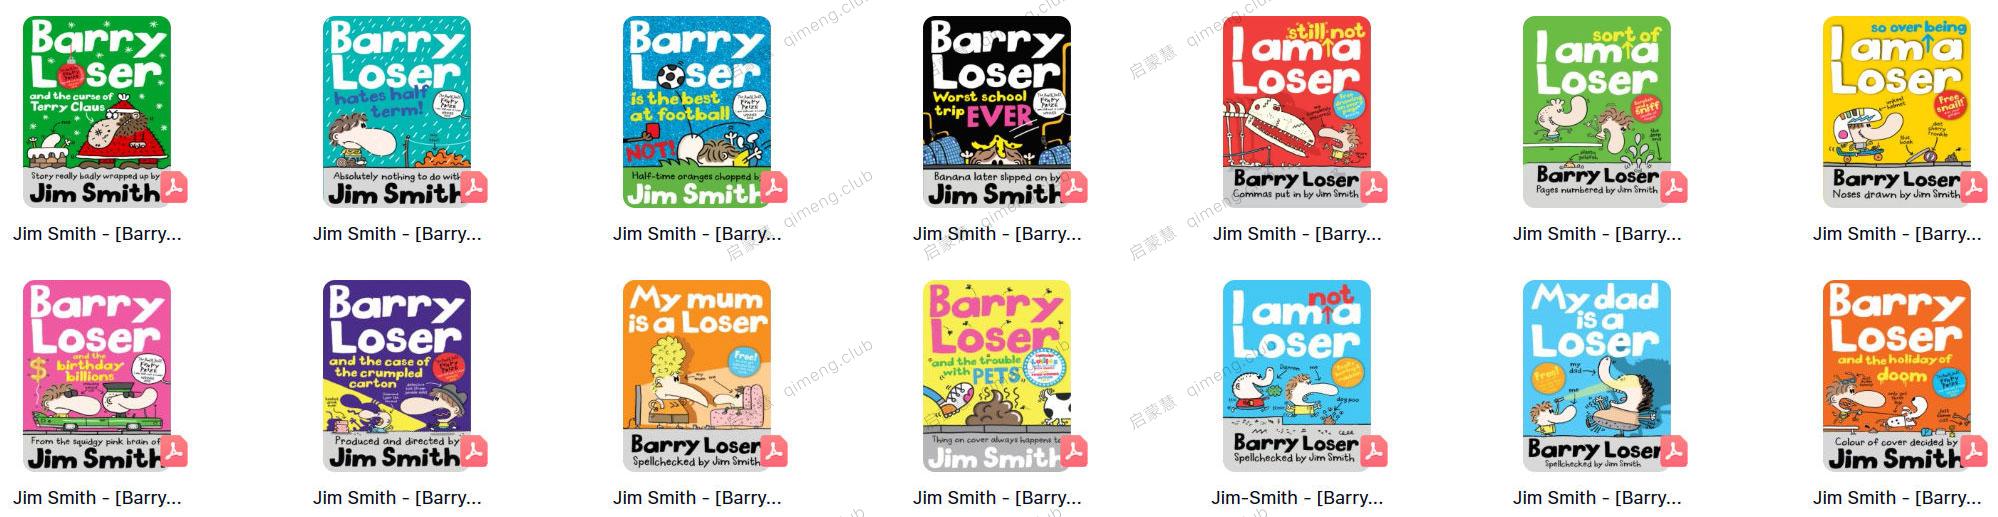 儿童涂鸦小说《倒霉蛋巴里 Barry Loser 》爆笑来袭！全11册PDF+电子书版+音频